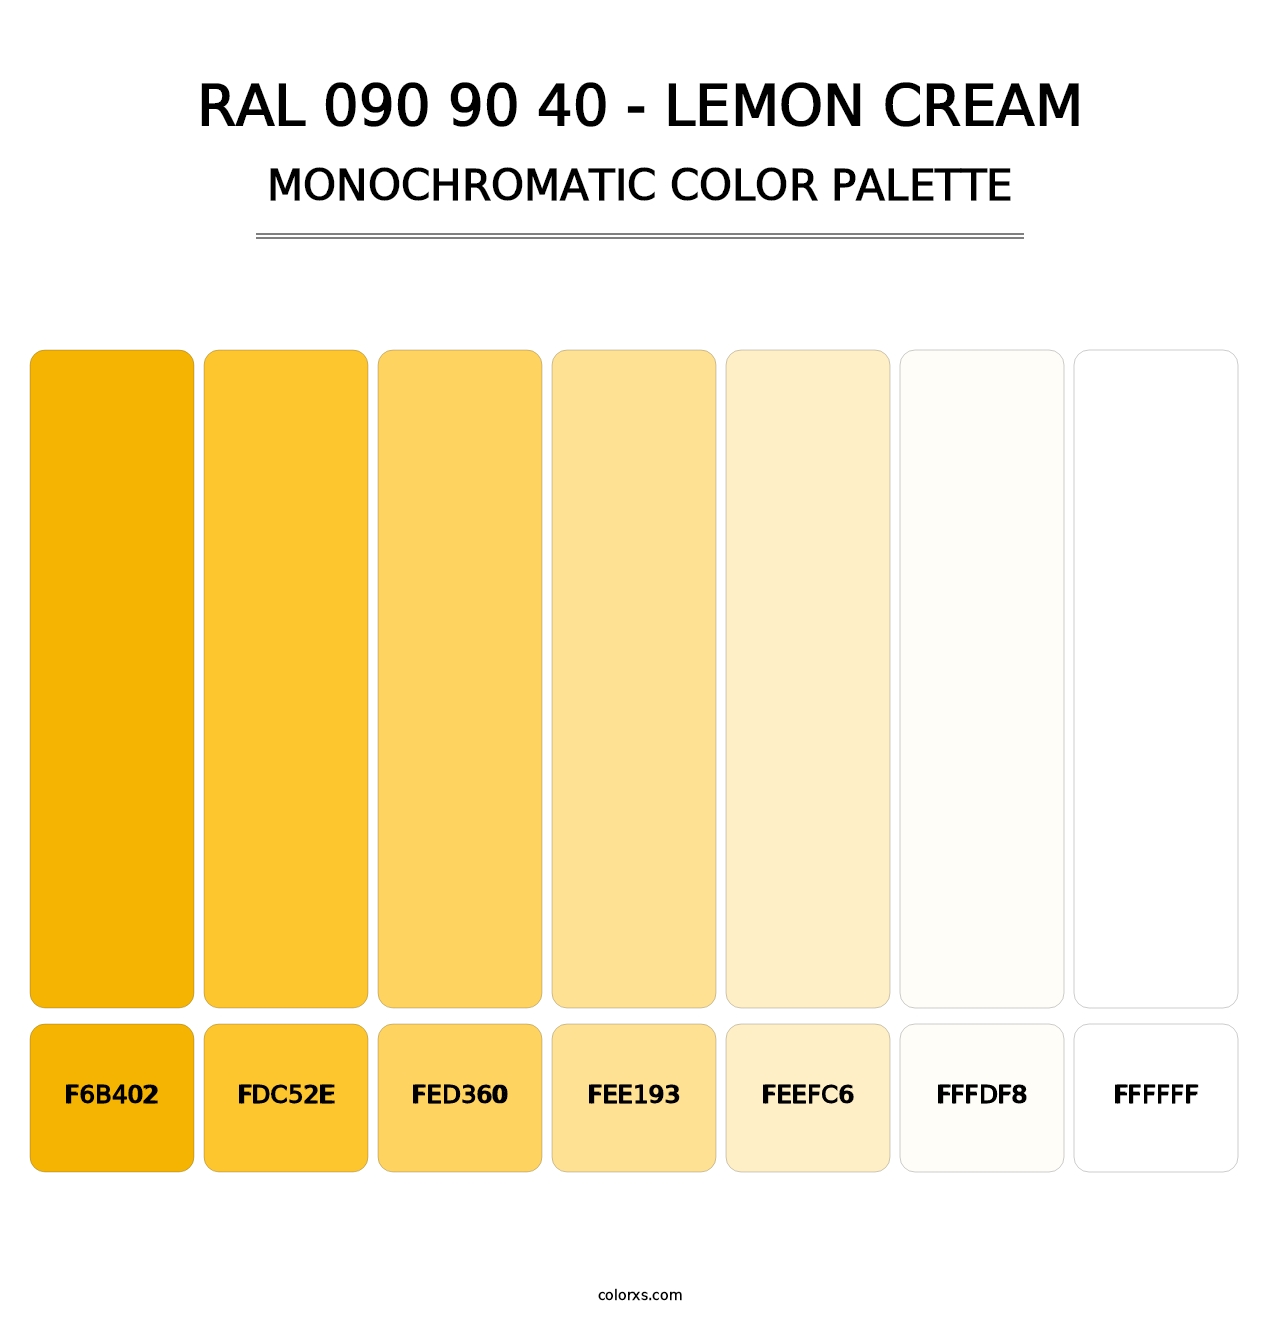 RAL 090 90 40 - Lemon Cream - Monochromatic Color Palette